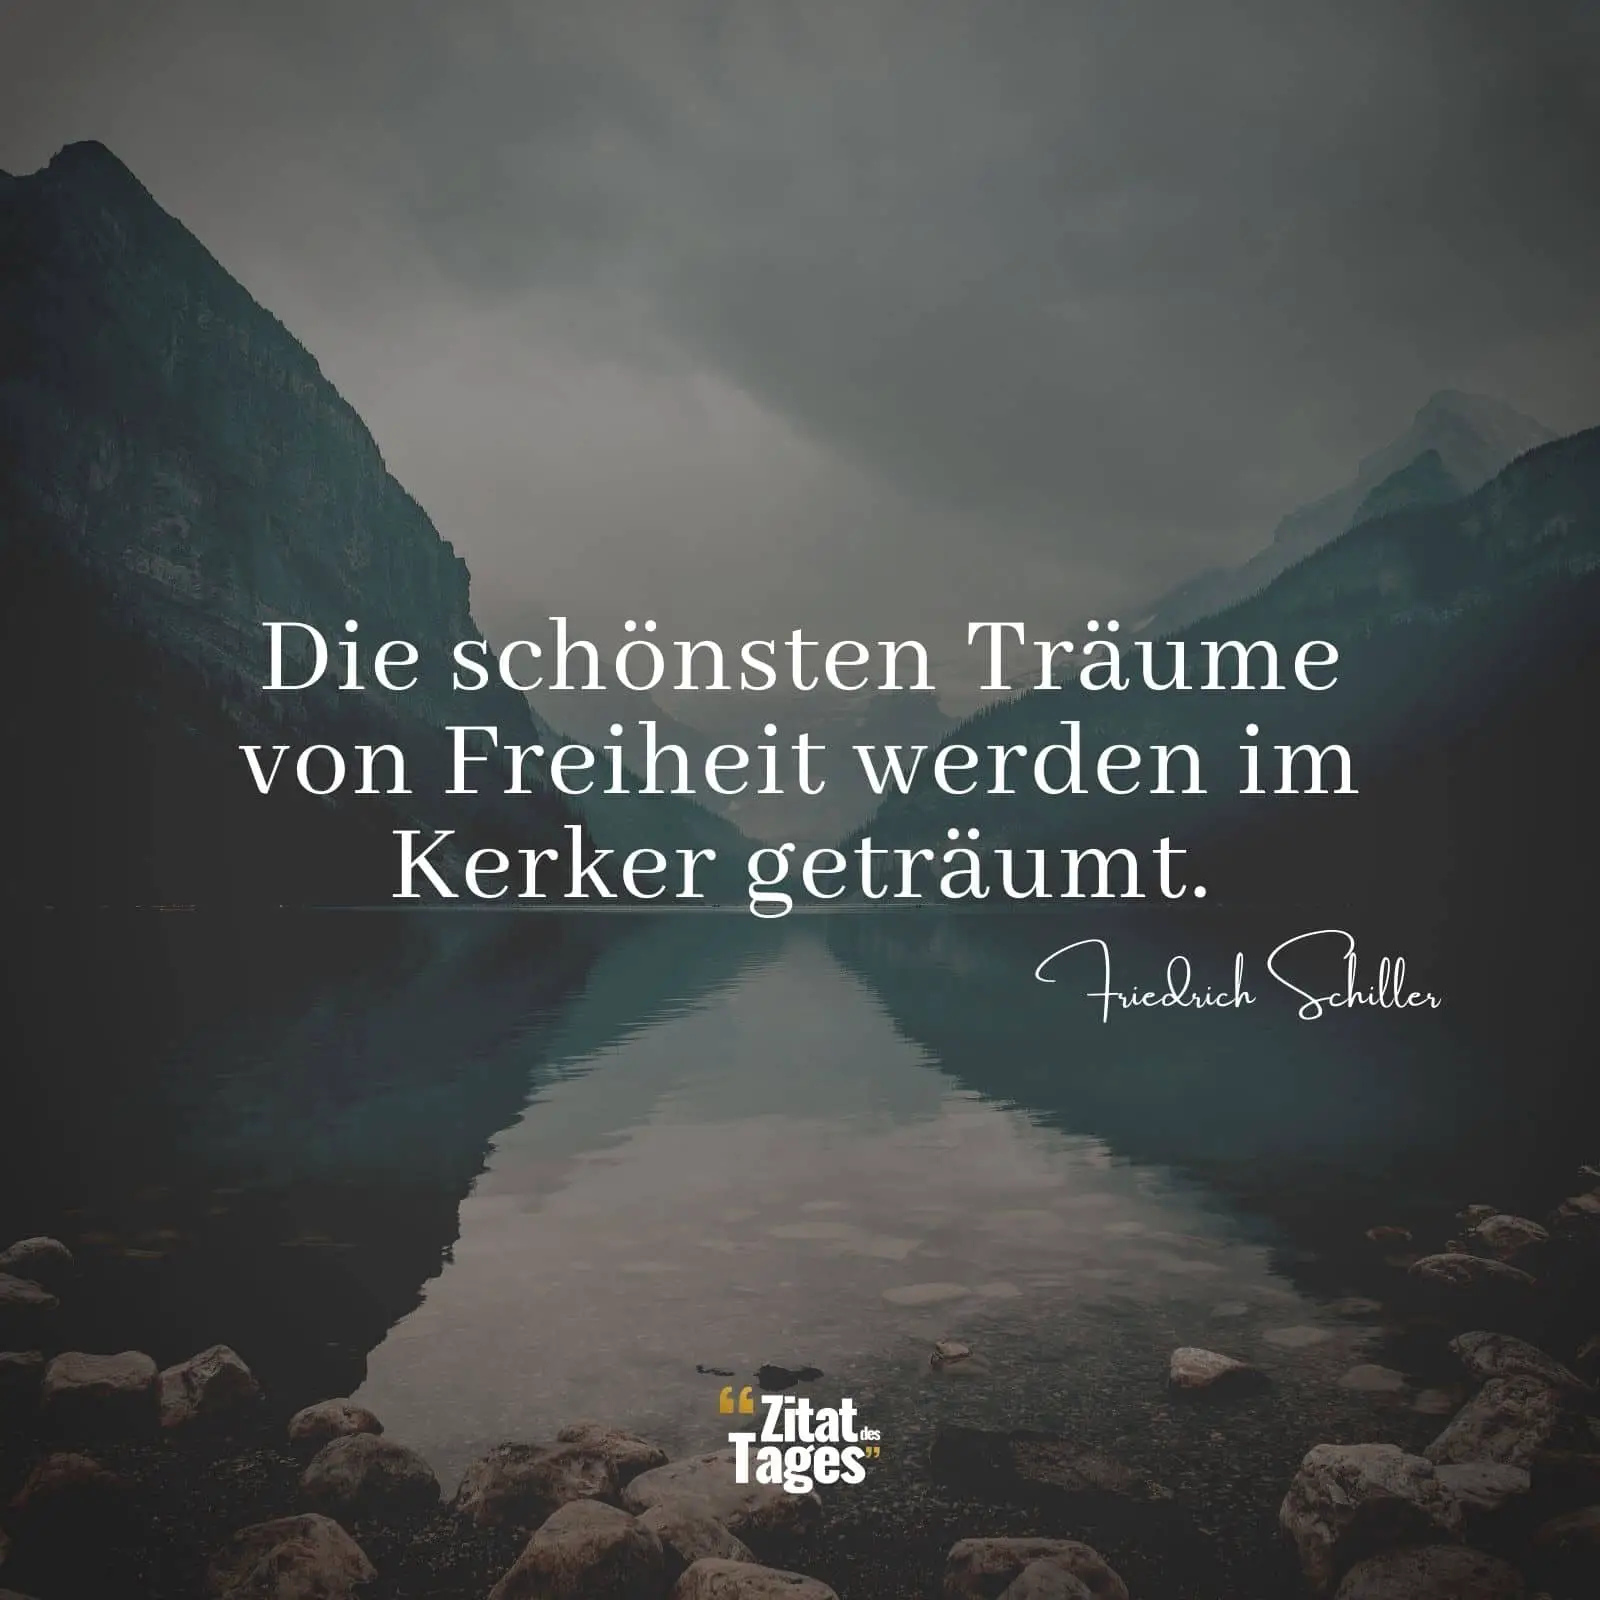 Die schönsten Träume von Freiheit werden im Kerker geträumt. - Friedrich Schiller